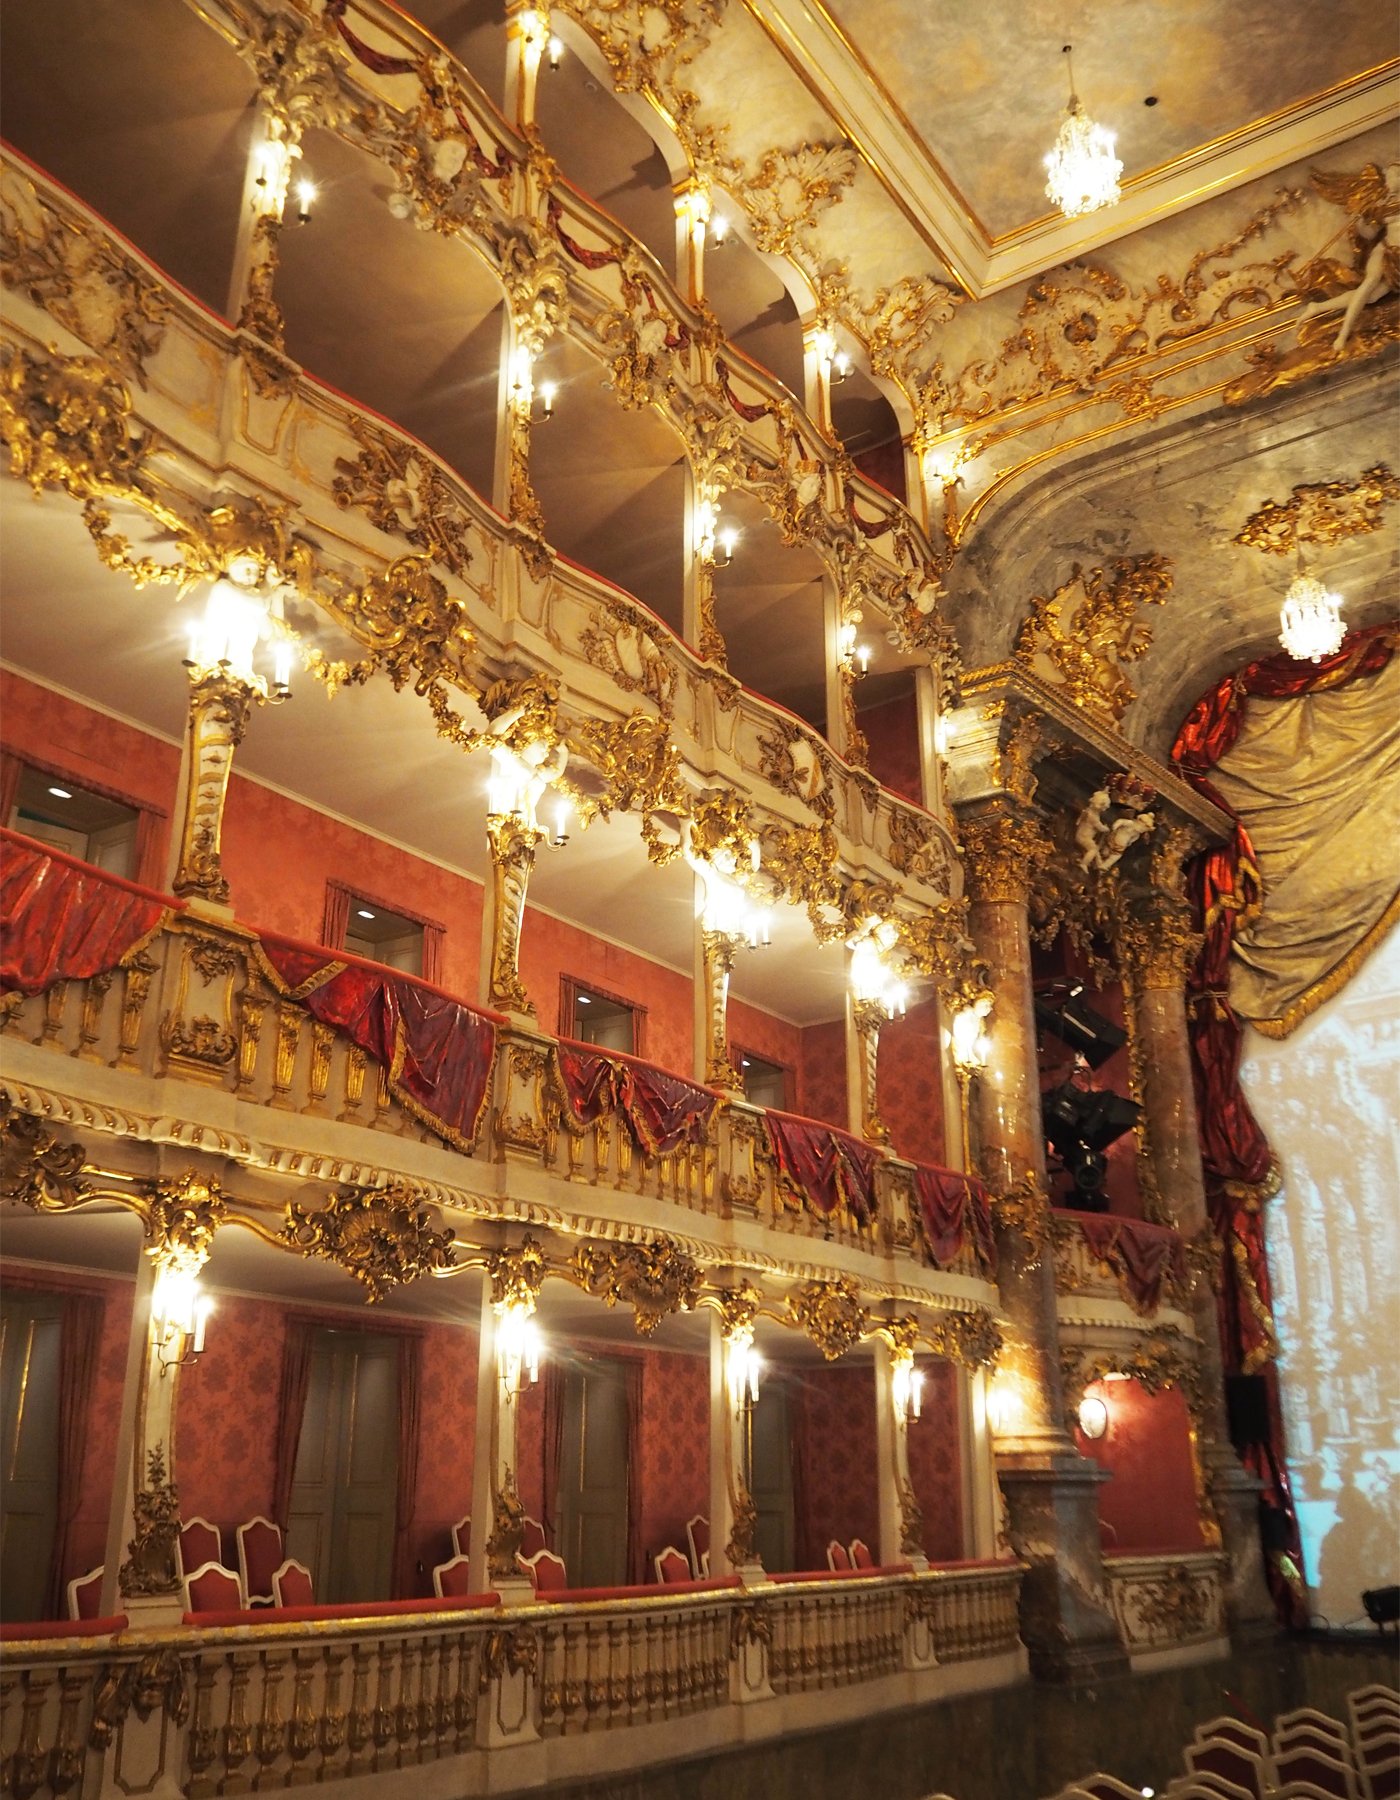 Theatre Munich